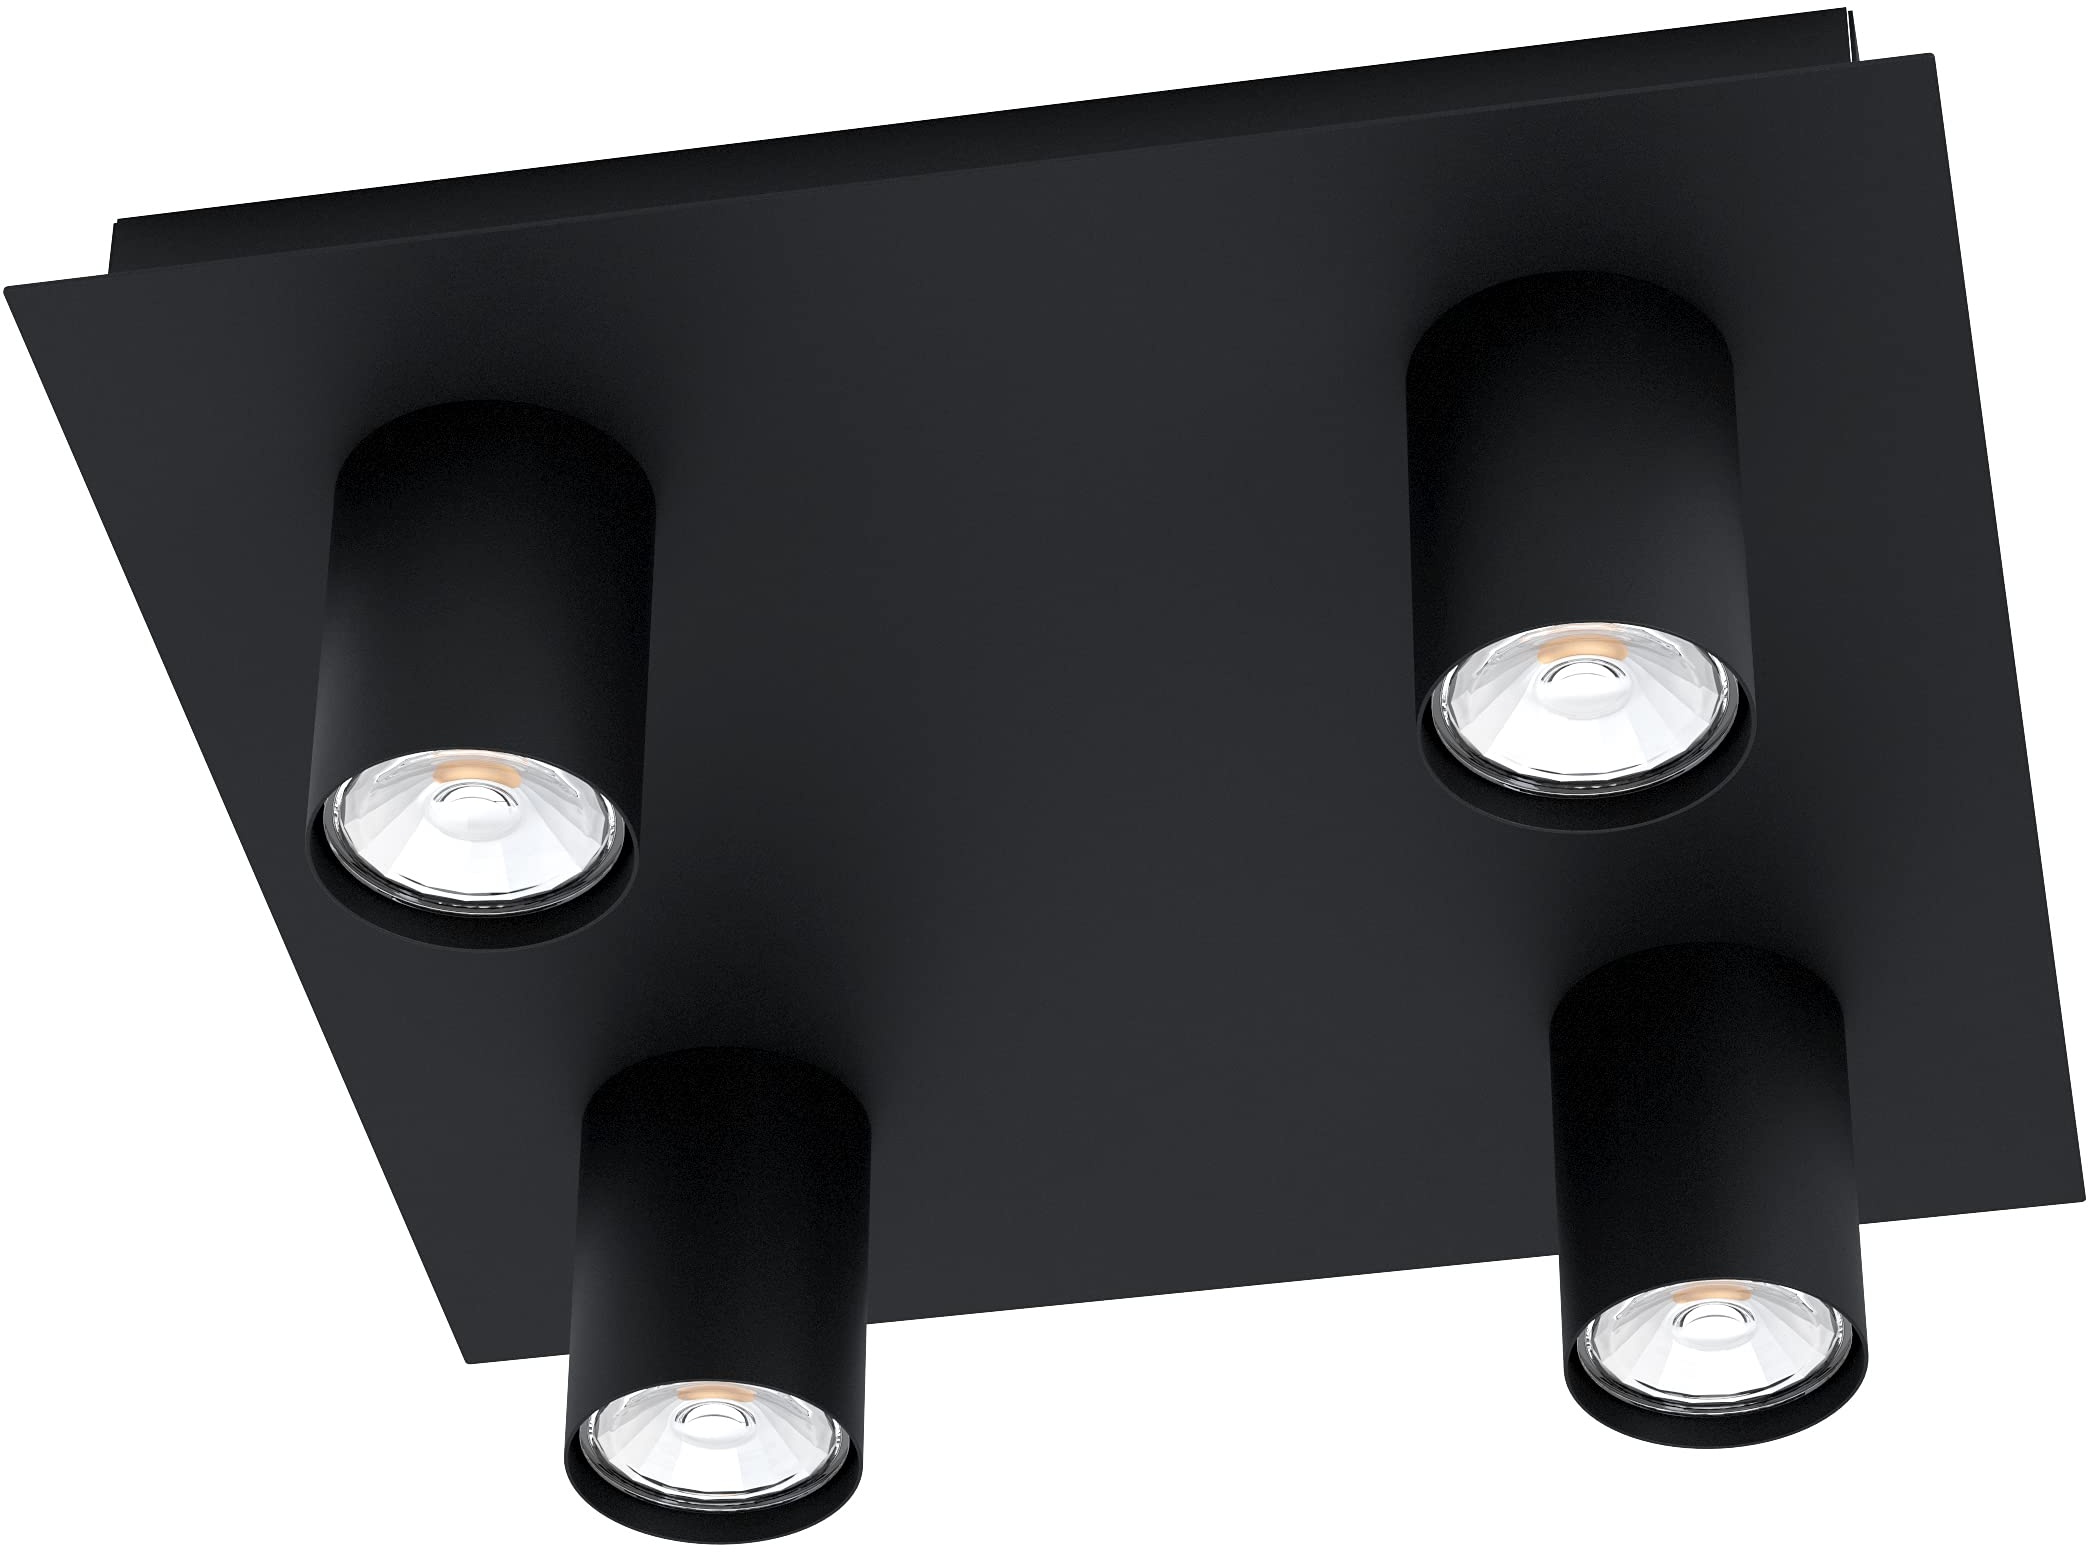 EGLO LED Deckenleuchte Valcasotto, 4 flammige Deckenlampe minimalistisch, Deckenstrahler aus Metall, Wohnzimmerlampe in Schwarz, LED Spots warmweiß, GU10, L x B 32 cm